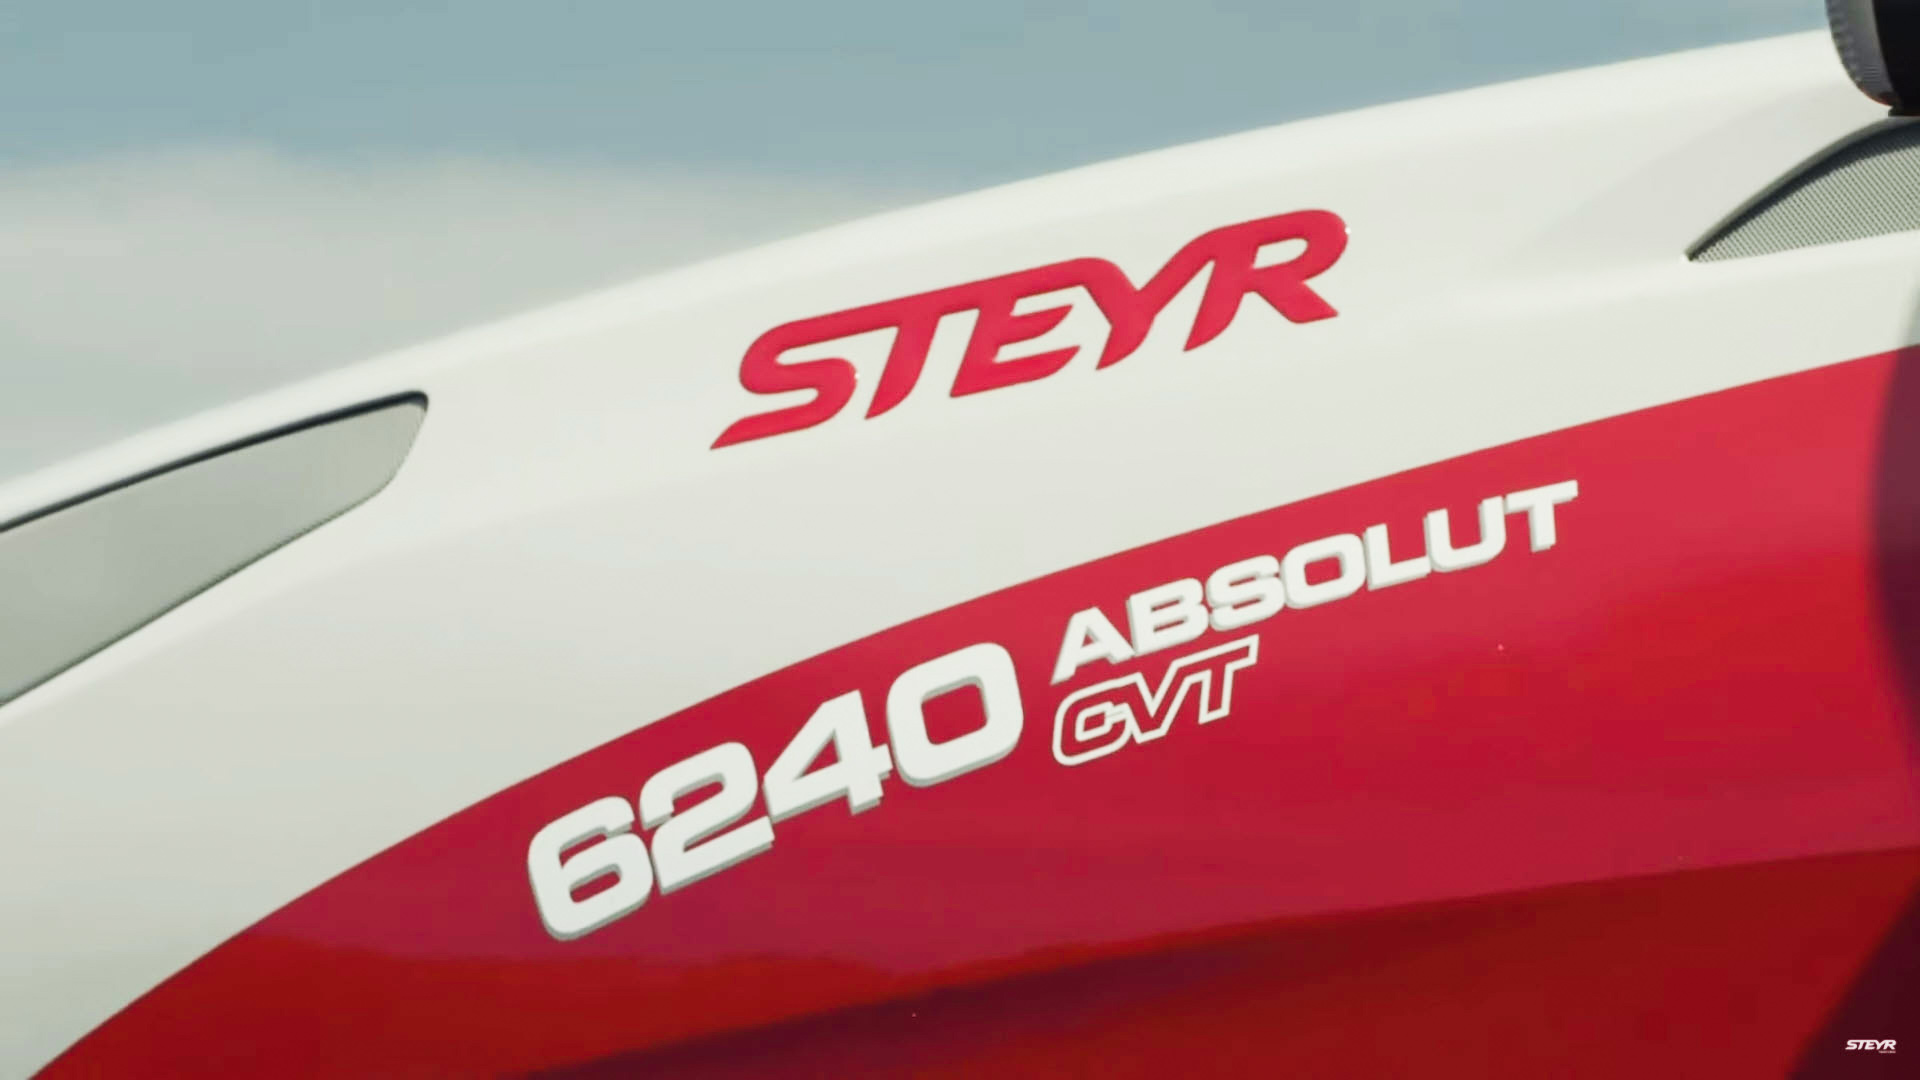 New Frontline System for Steyr ABSOLUT CVT (Stage 5) - Frontlink